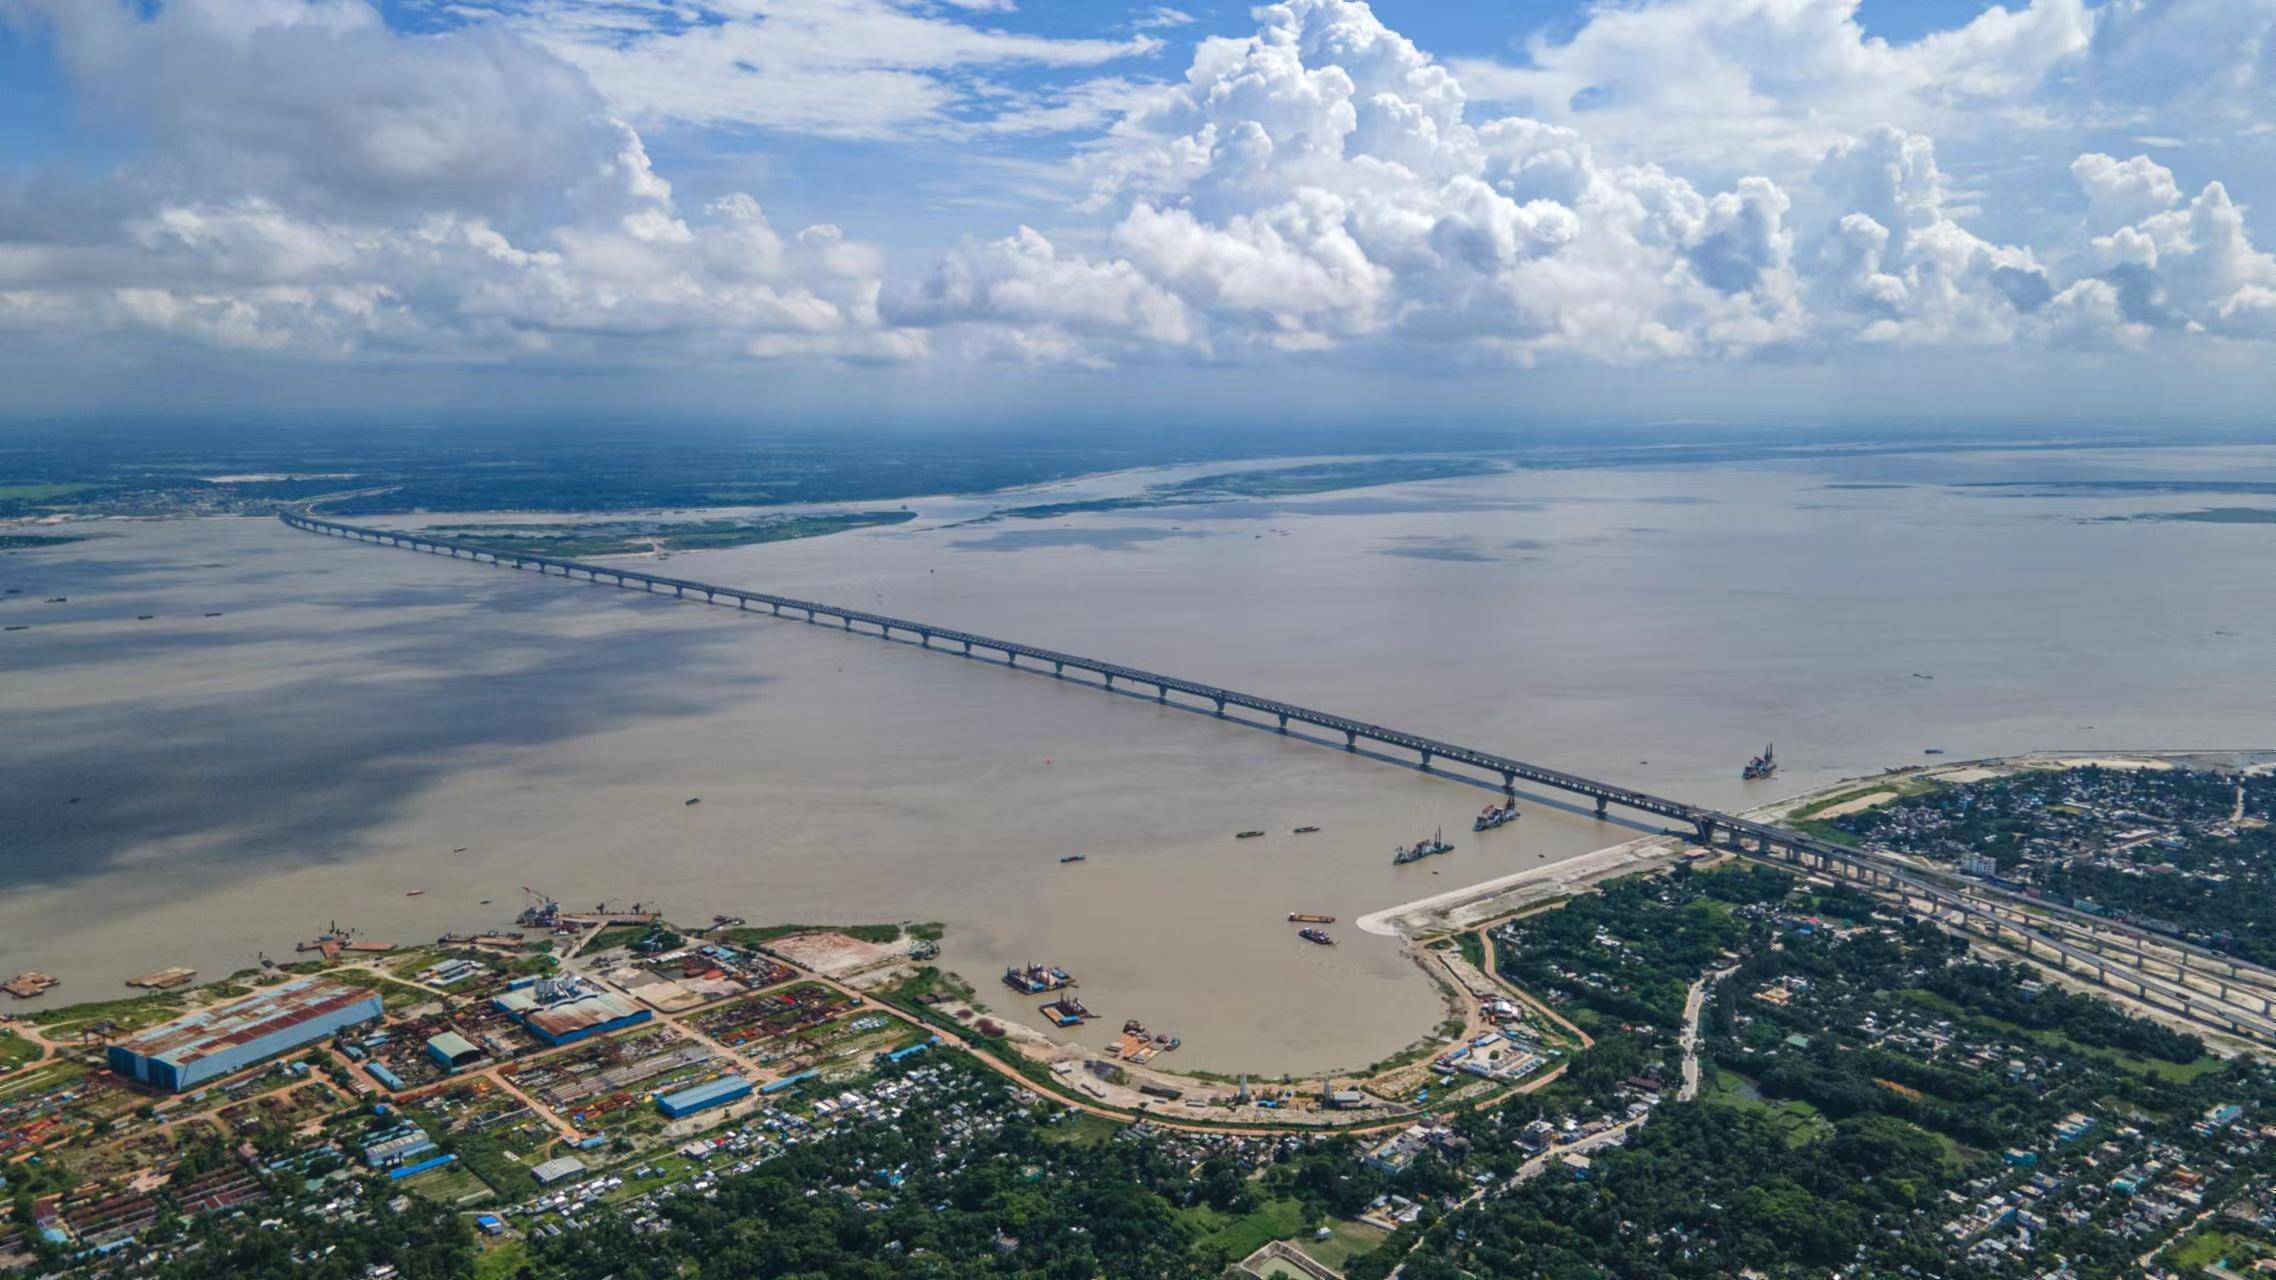 帕德玛大桥:将为孟加拉国带来每年15%gdp增长